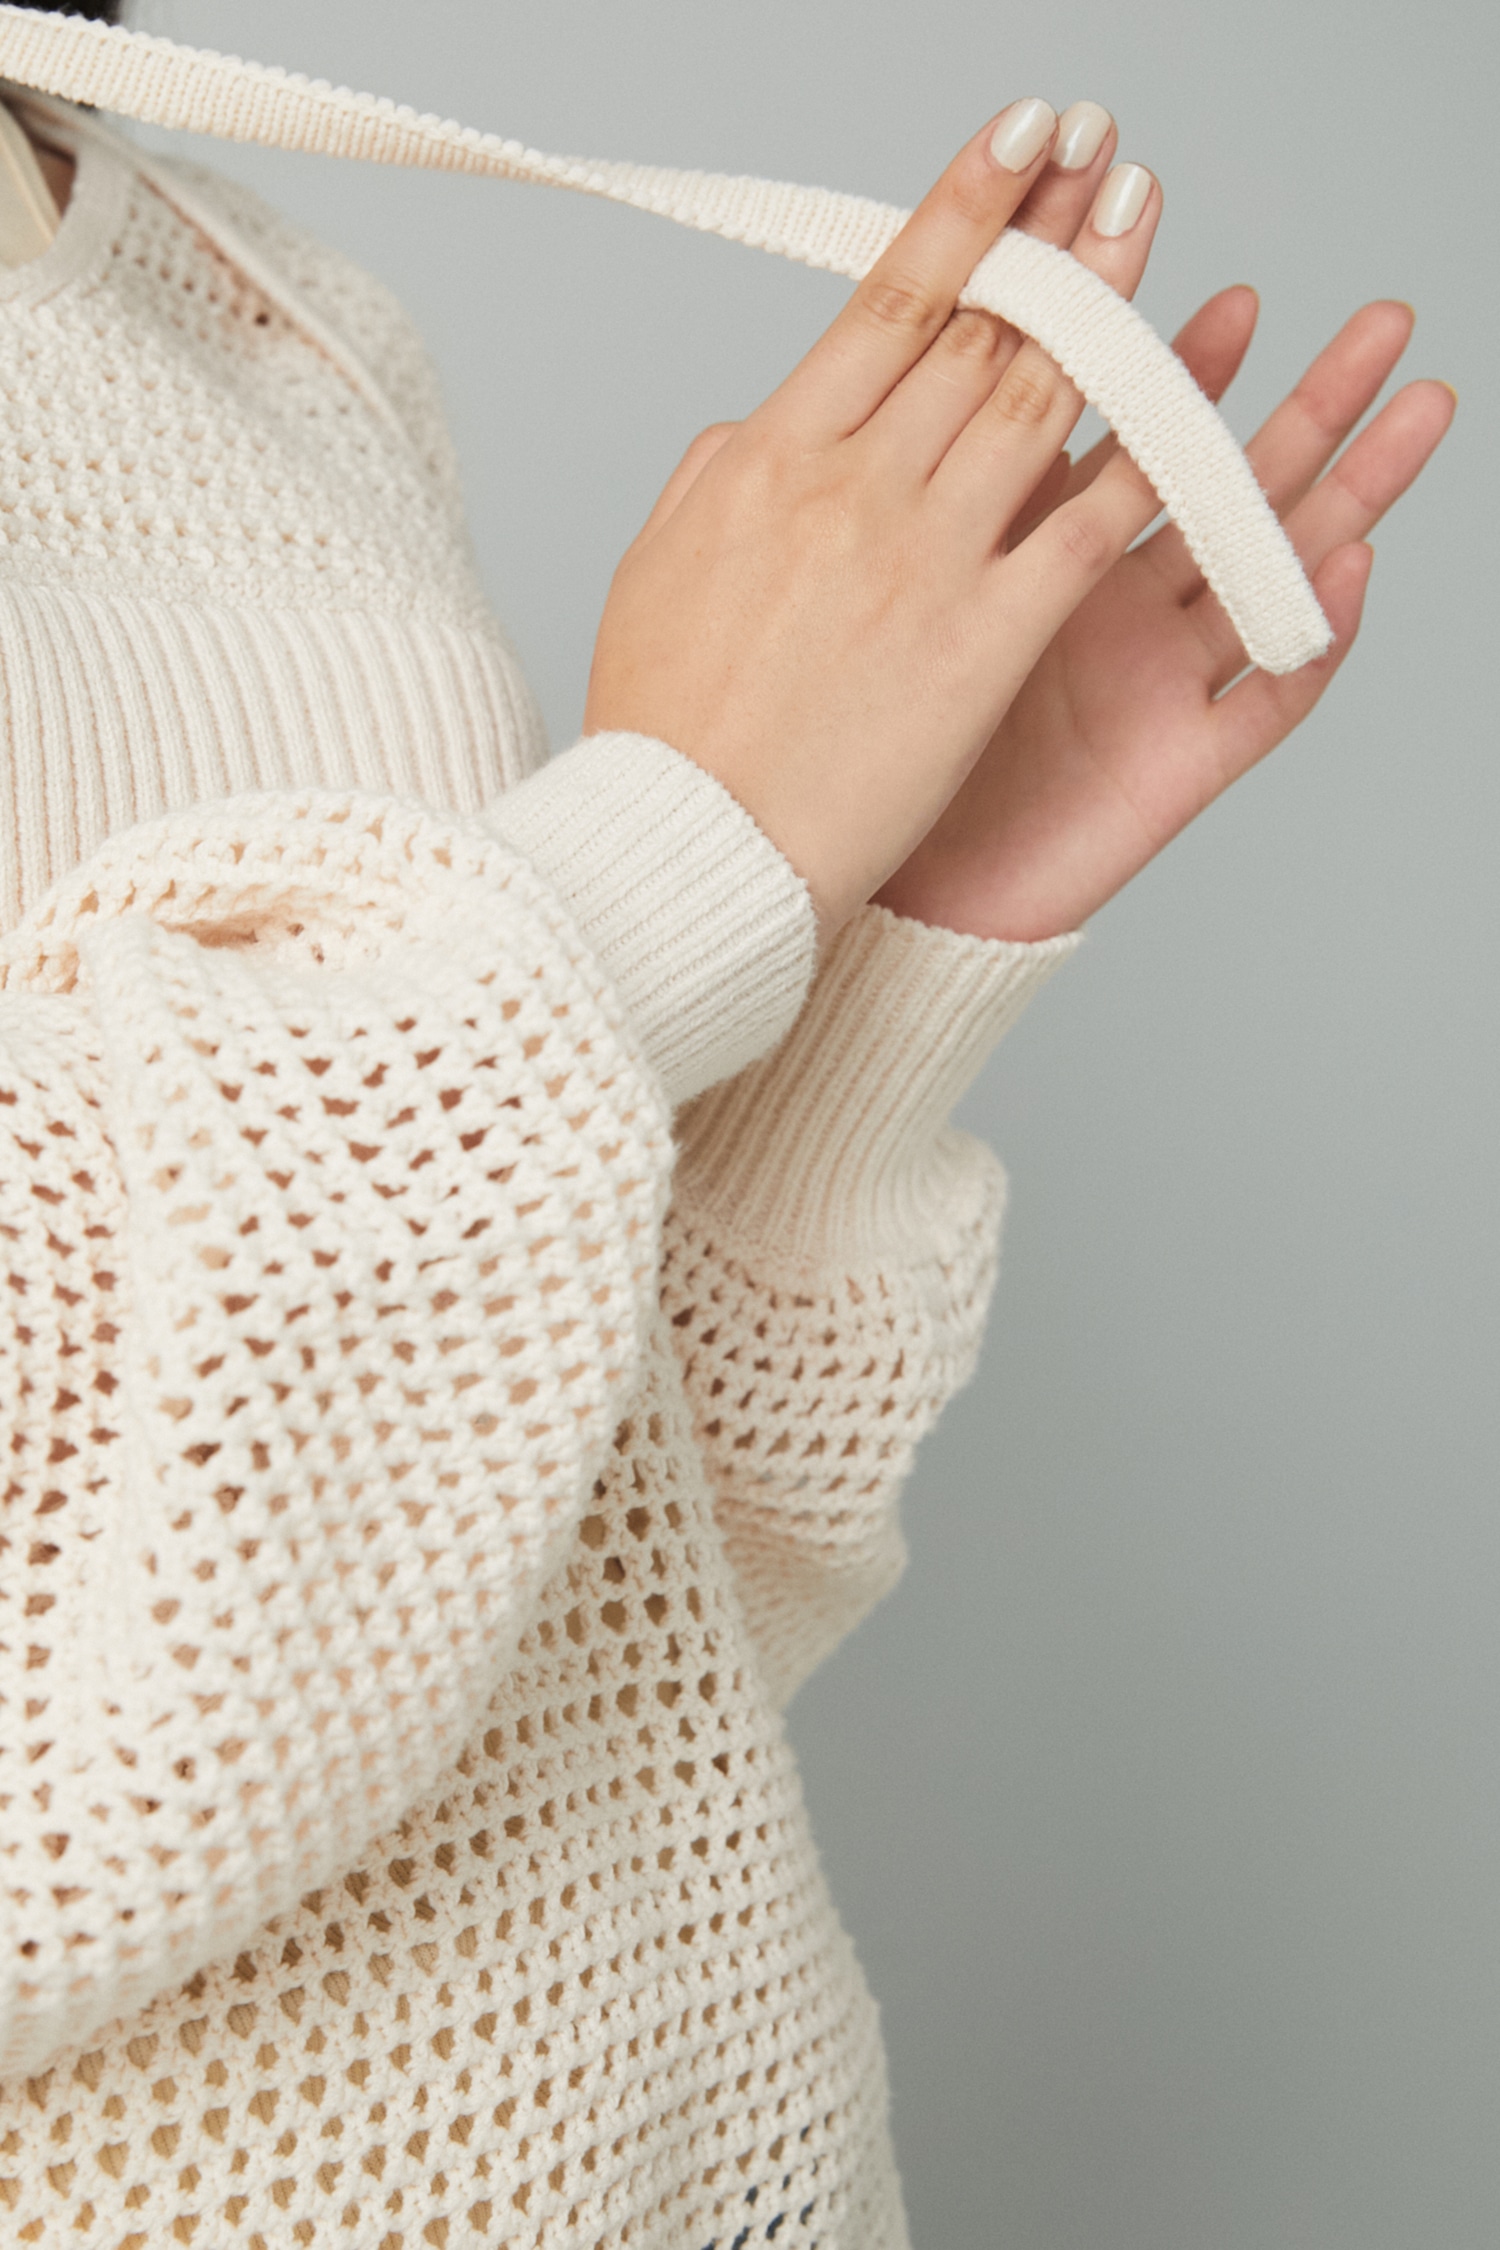 HeRIN.CYE | Mesh knit tops (ニット ) |SHEL'TTER WEBSTORE